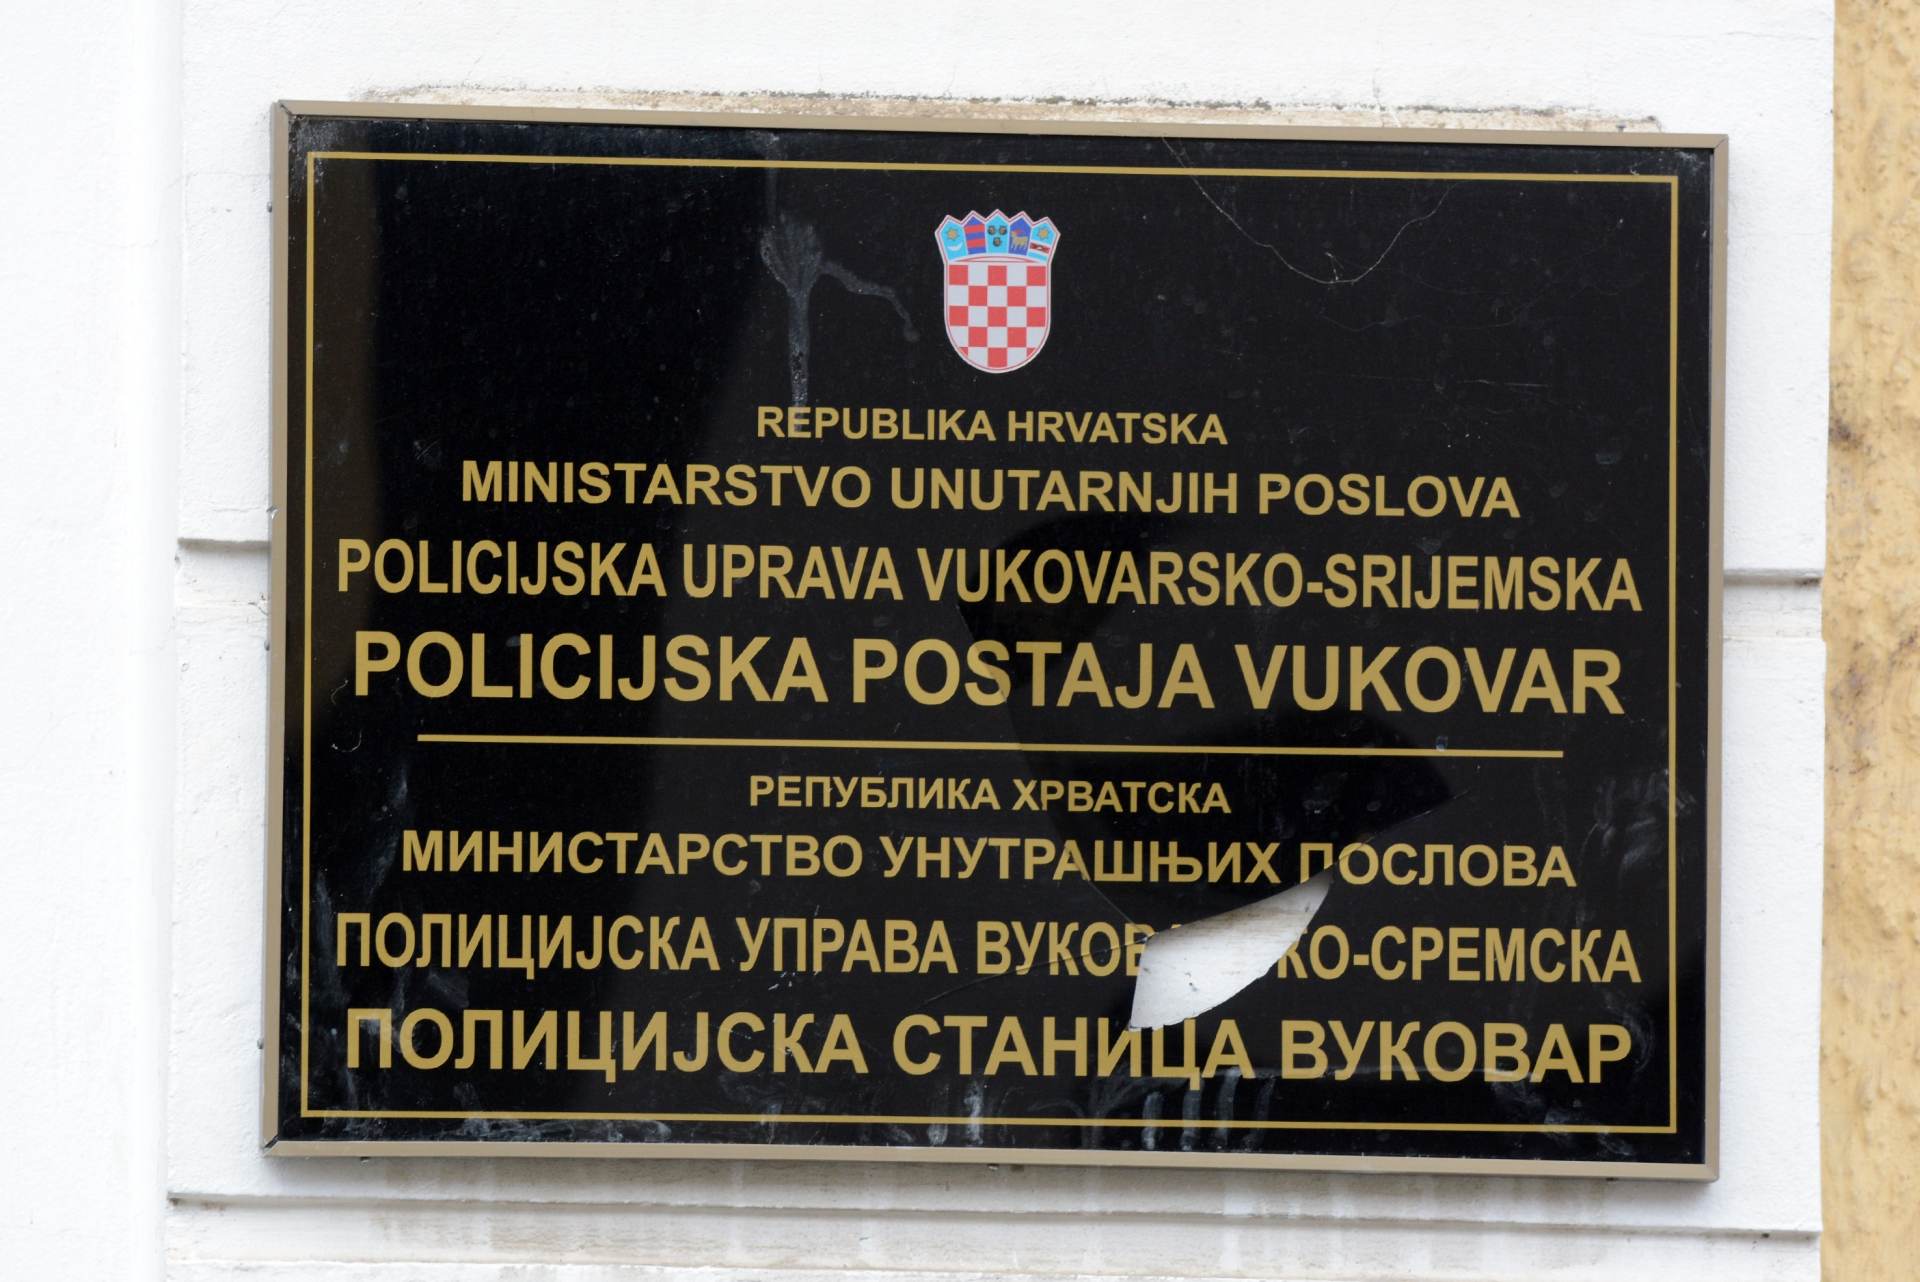 Vijeće Europe izrazilo žaljenje zbog onemogućavanja dvojezičnih natpisa u Vukovaru